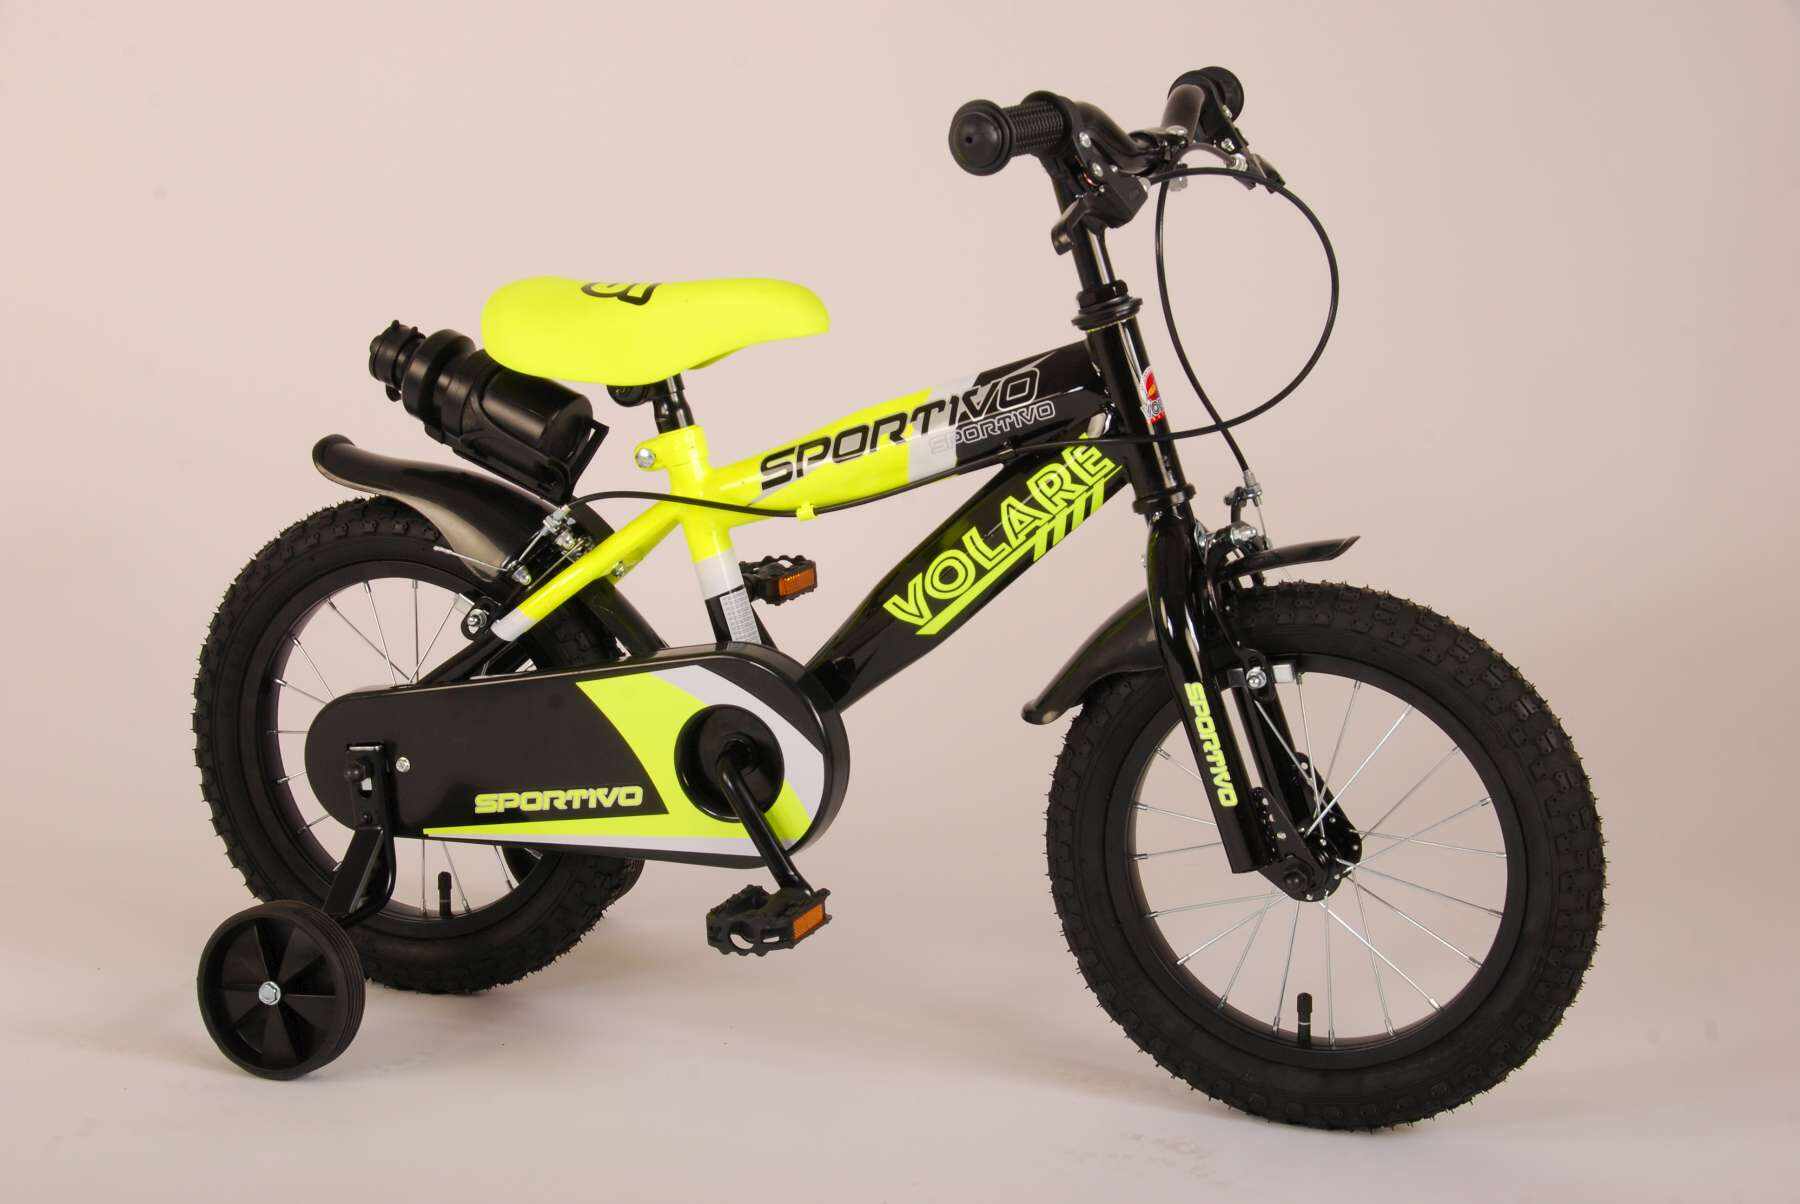 Bicicleta pentru baieti Volare Sportivo, 14 inch, culoare Negru/Galben neon, frana de mana fata - spate